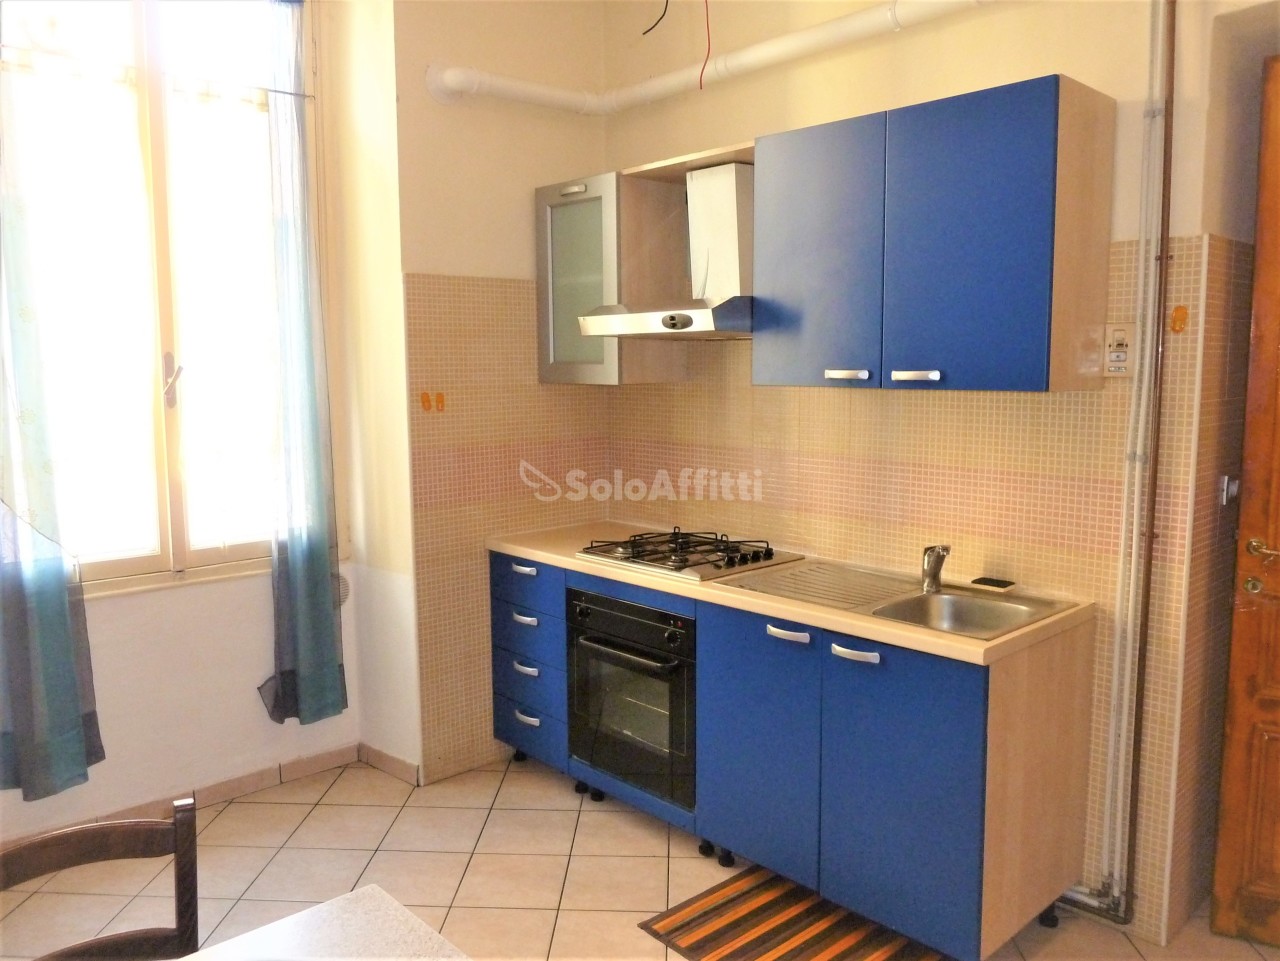 Appartamento in affitto a SanRemo, 2 locali, prezzo € 450 | PortaleAgenzieImmobiliari.it